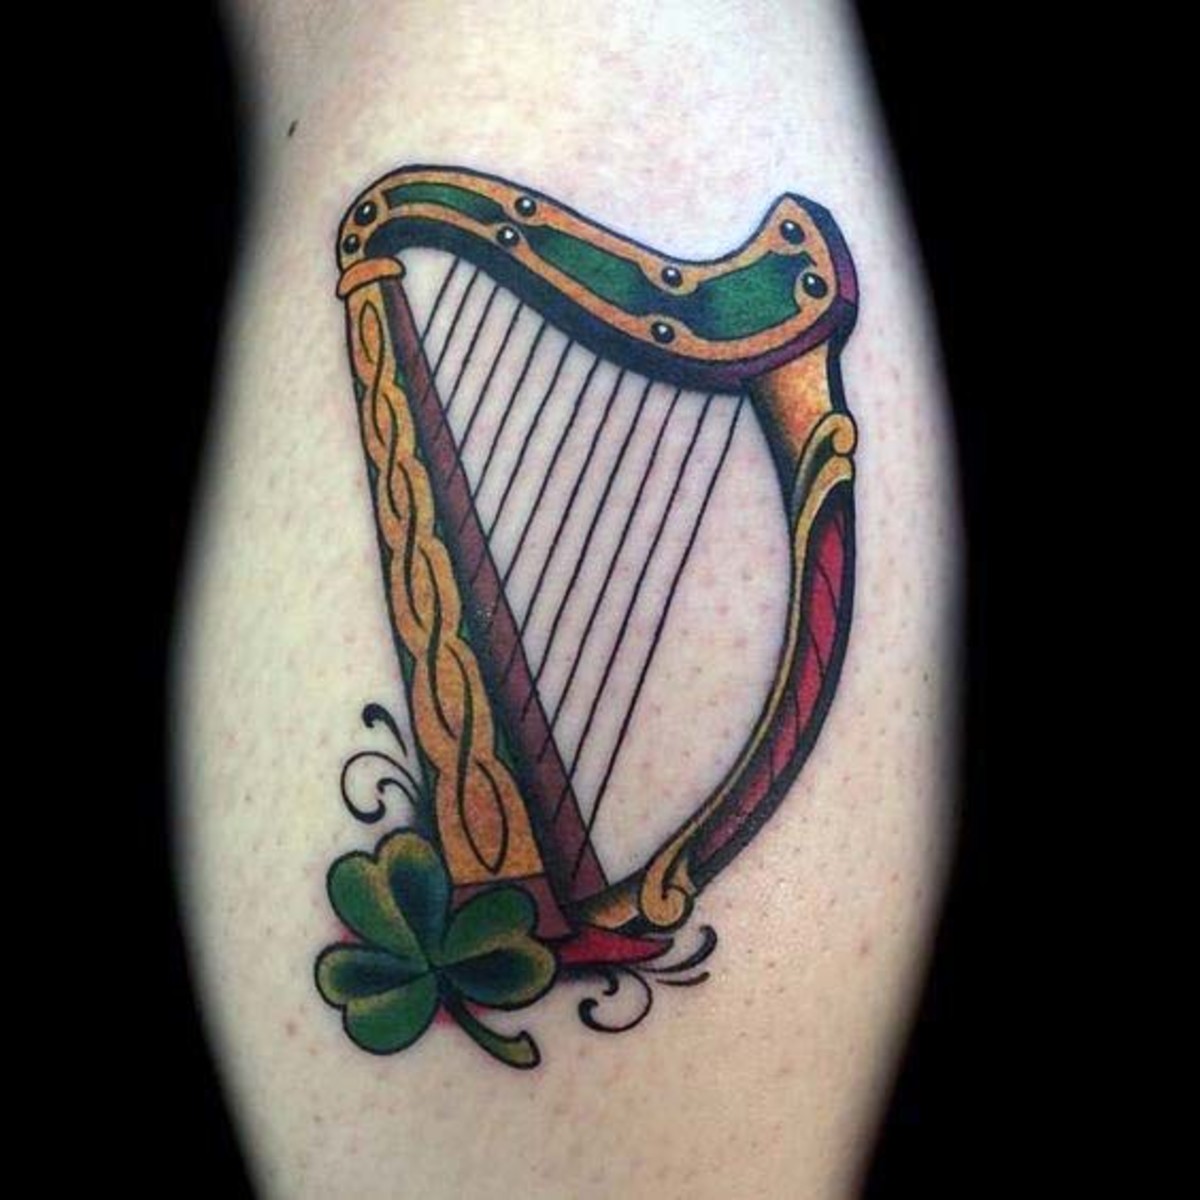 Irske tatoveringer, Irske tatoveringer til mænd, Irske tatoveringer til kvinder, Keltiske tatoveringer, Fire-tatoverede tatoveringer, St.